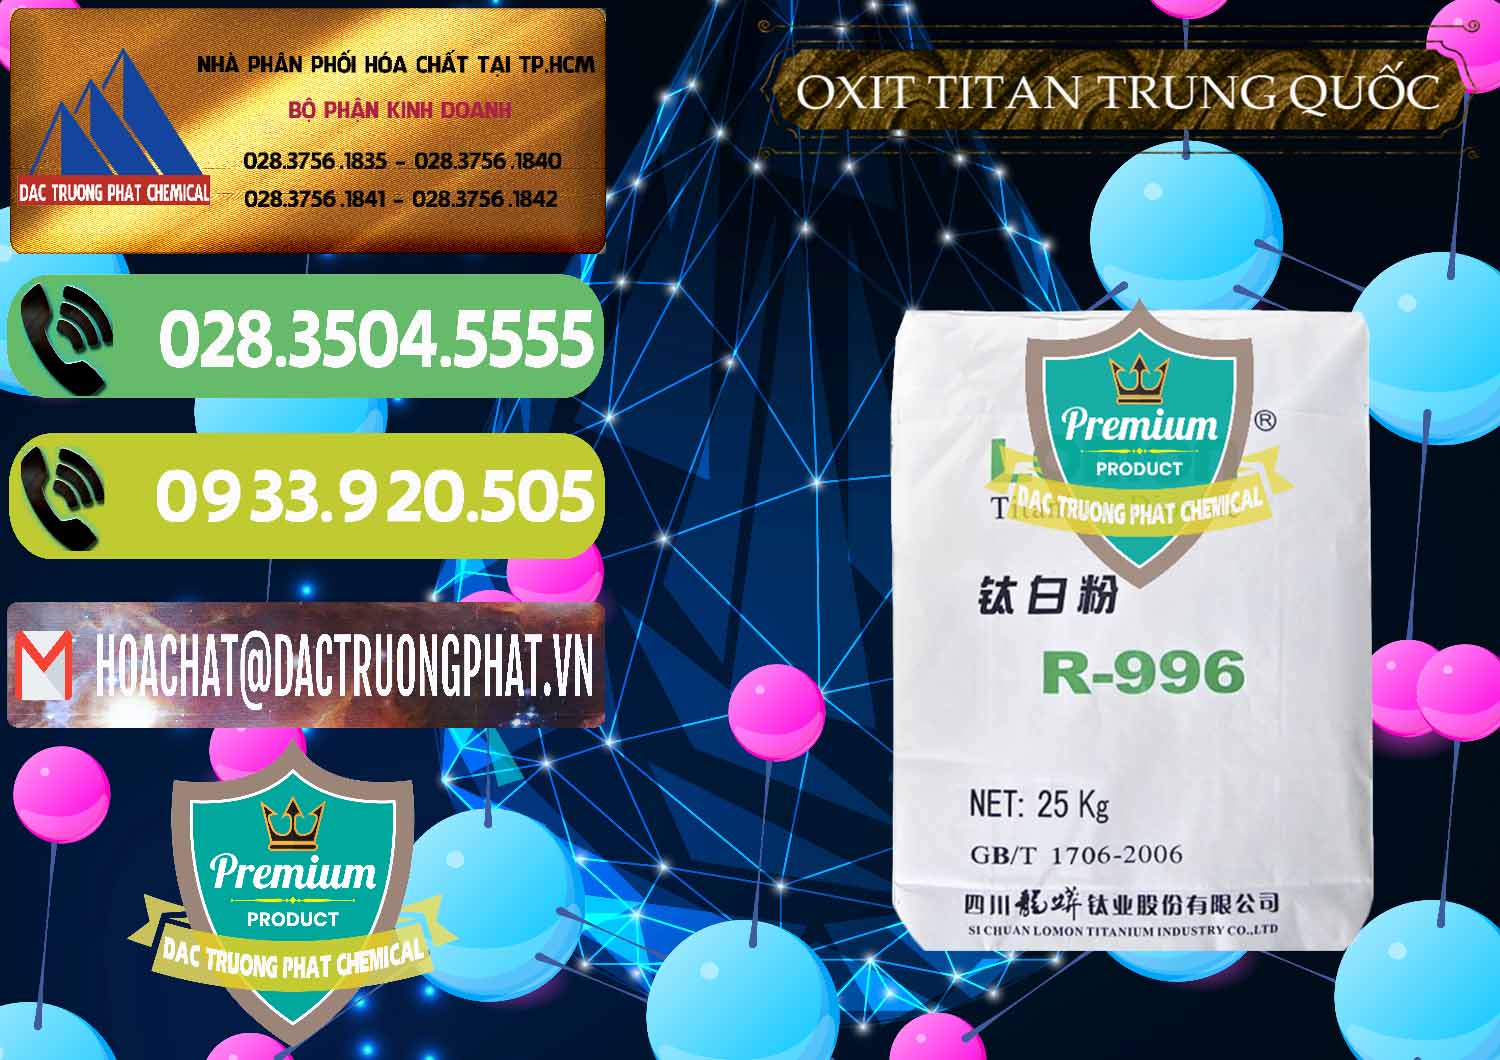 Cty chuyên bán & cung cấp Oxit Titan KA100 – Tio2 Trung Quốc China - 0398 - Nơi chuyên nhập khẩu _ cung cấp hóa chất tại TP.HCM - hoachatmientay.vn